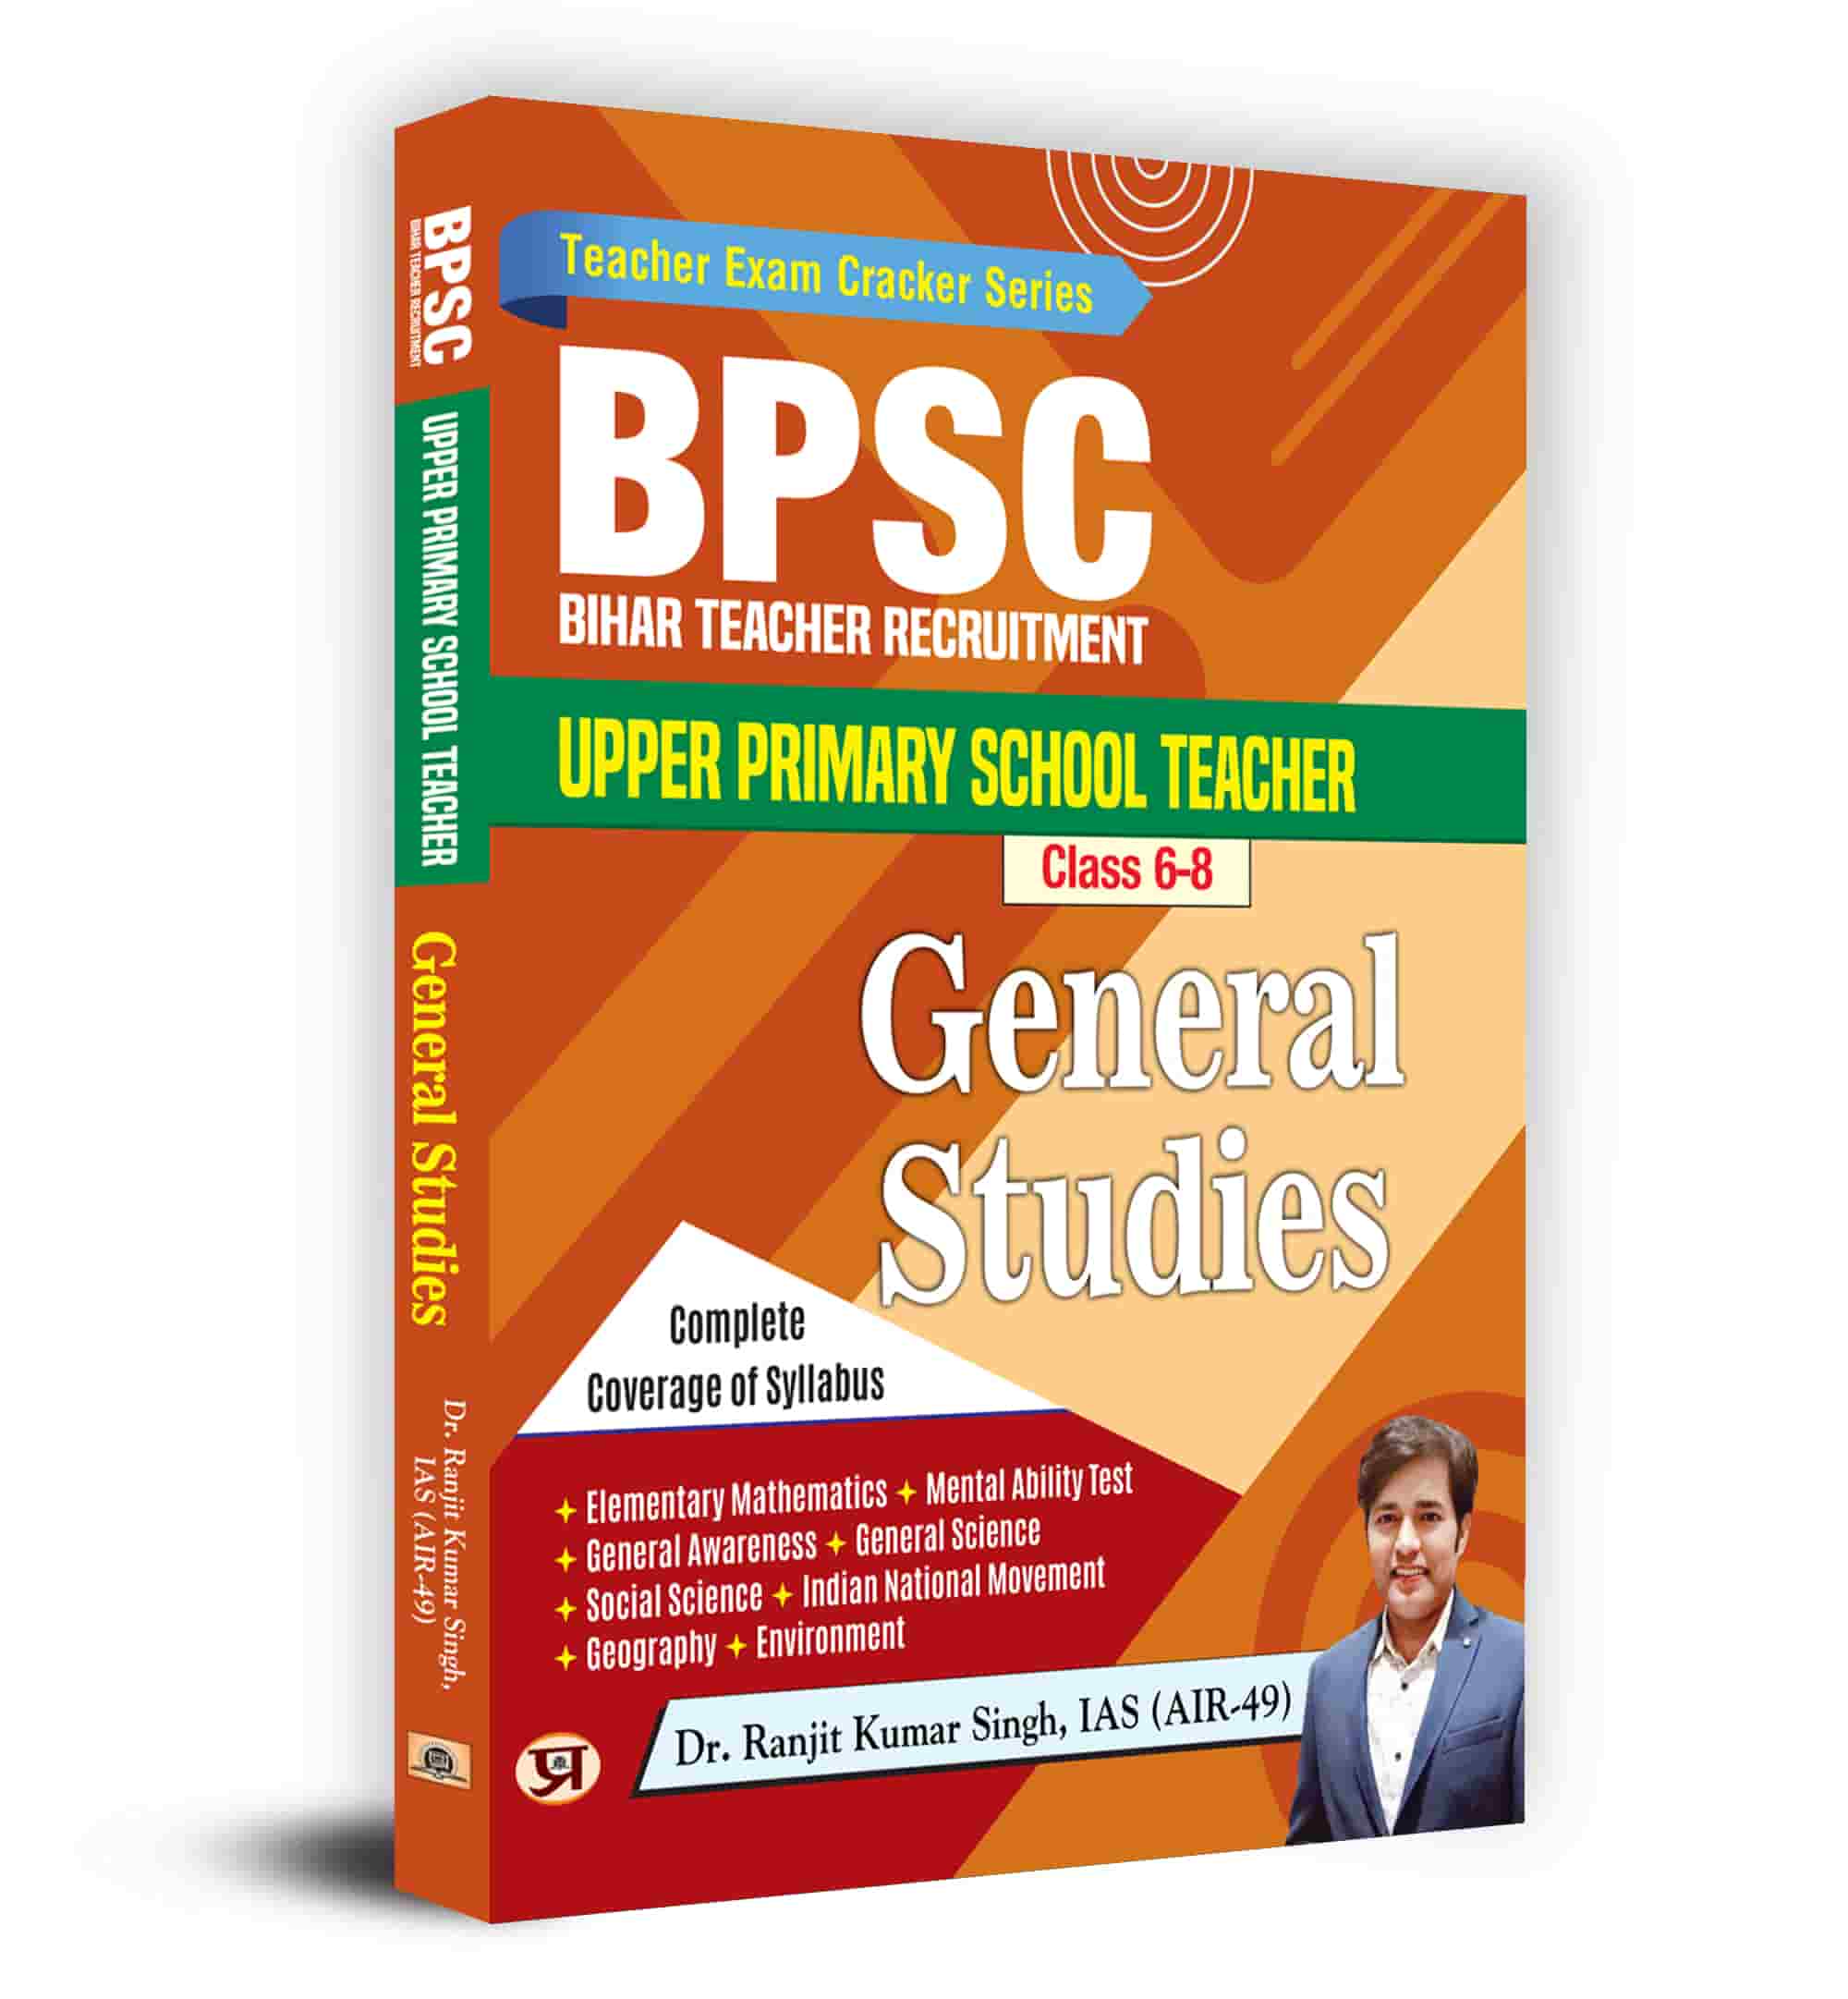 BPSC Bihar Teacher Recruitment Upper Primary School Teacher Class 6-8 ... 